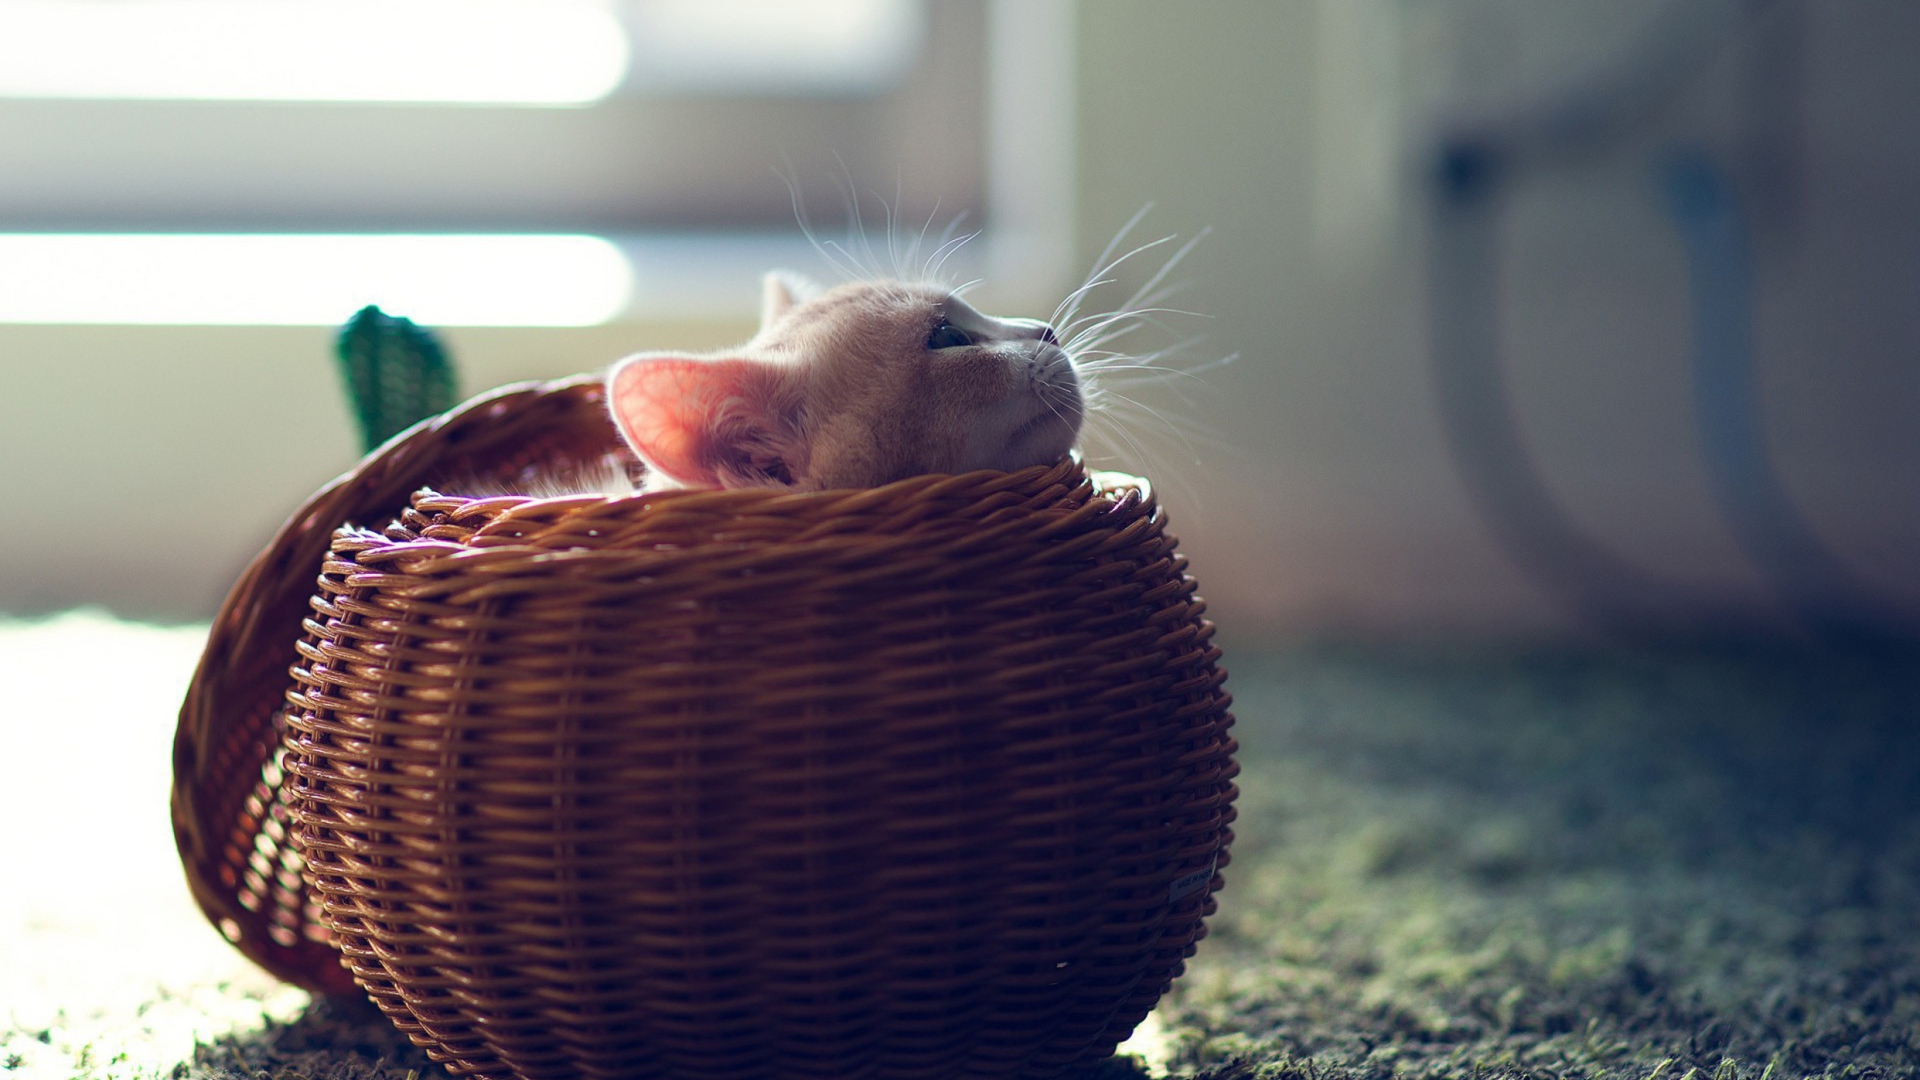 Cute Kitten In Basket wallpaper 1920x1080